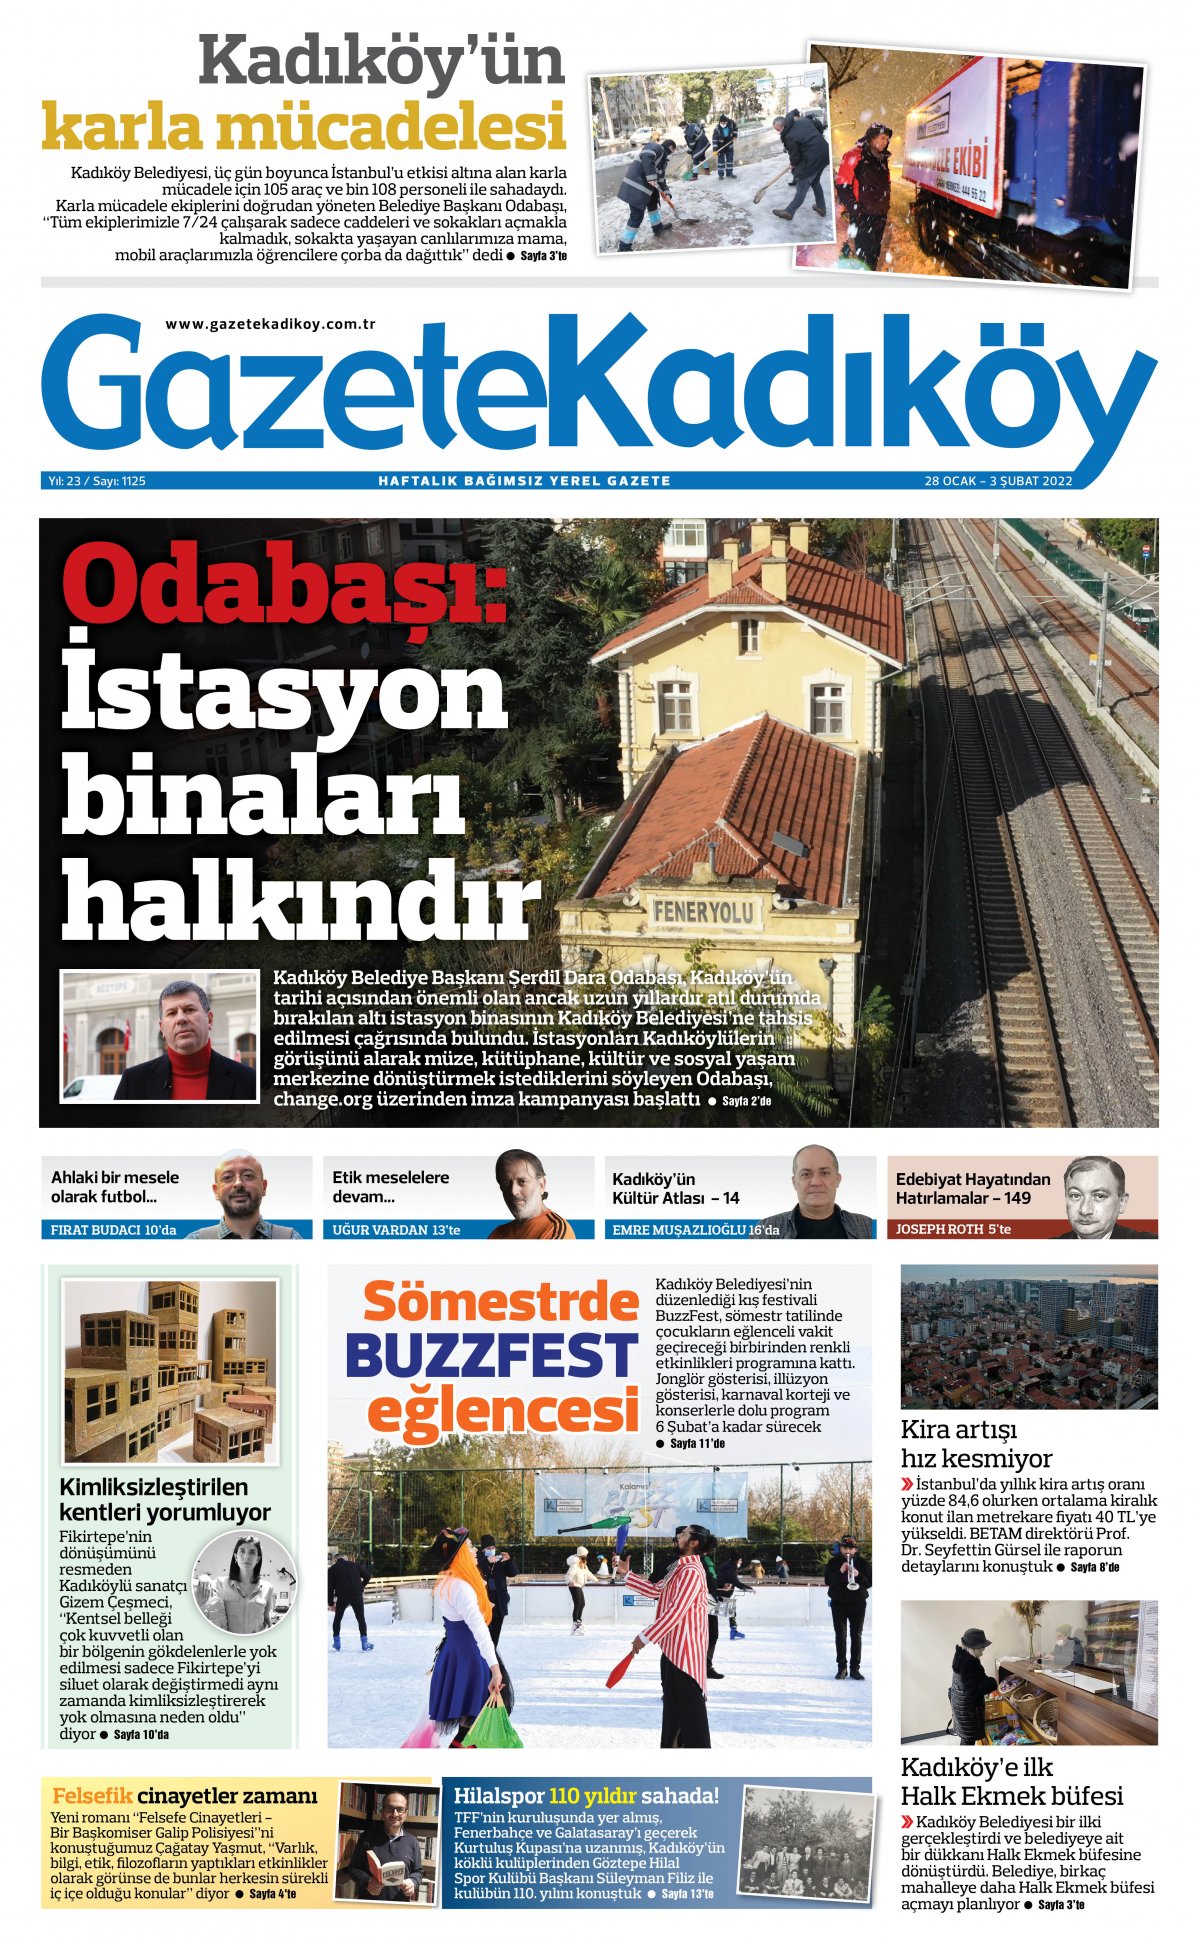 Gazete Kadıköy - 1125. SAYI